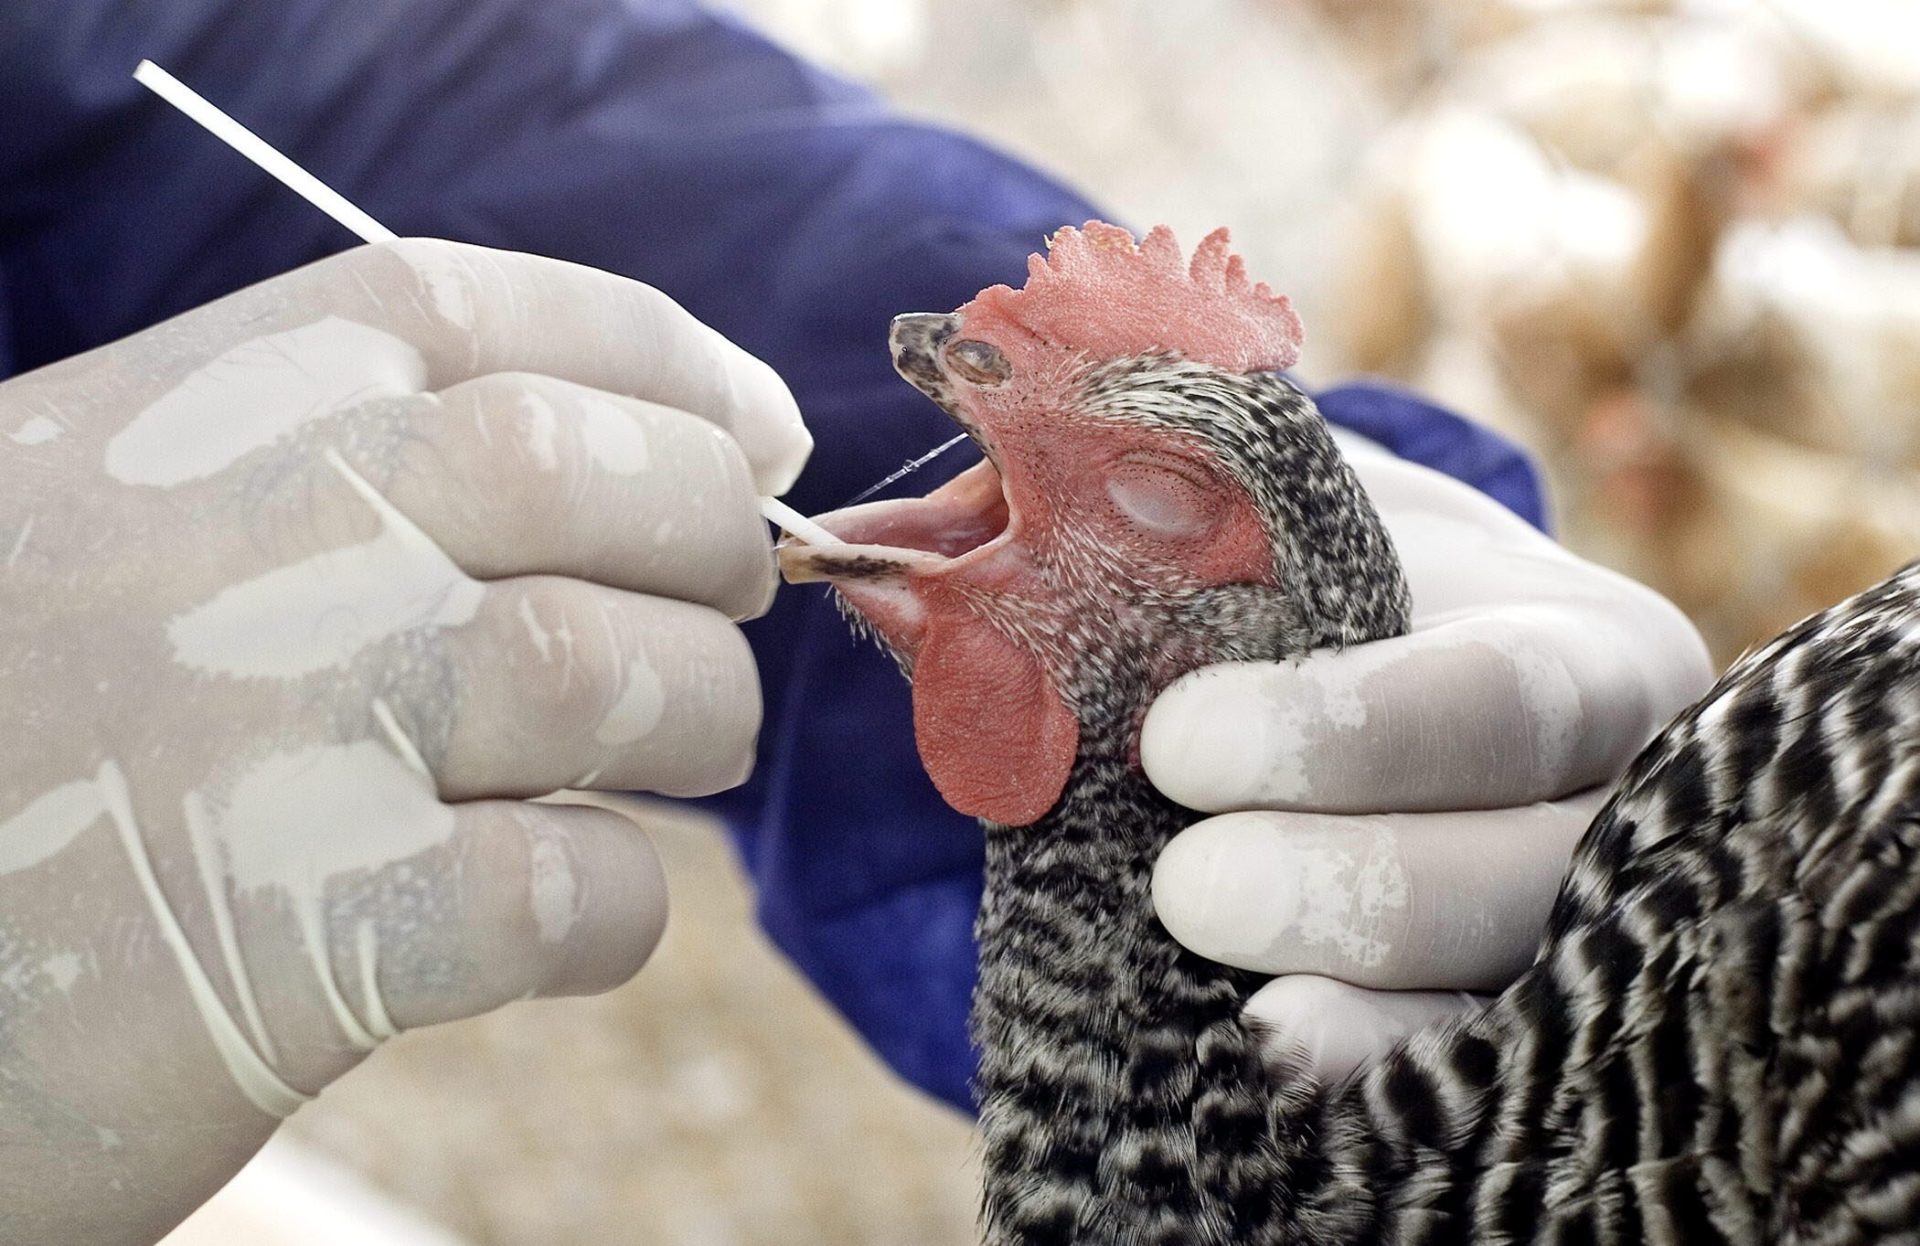 Un especialista saca una muestra de saliva a un ave en una granja. EFE/ARCHIVO/John Riley